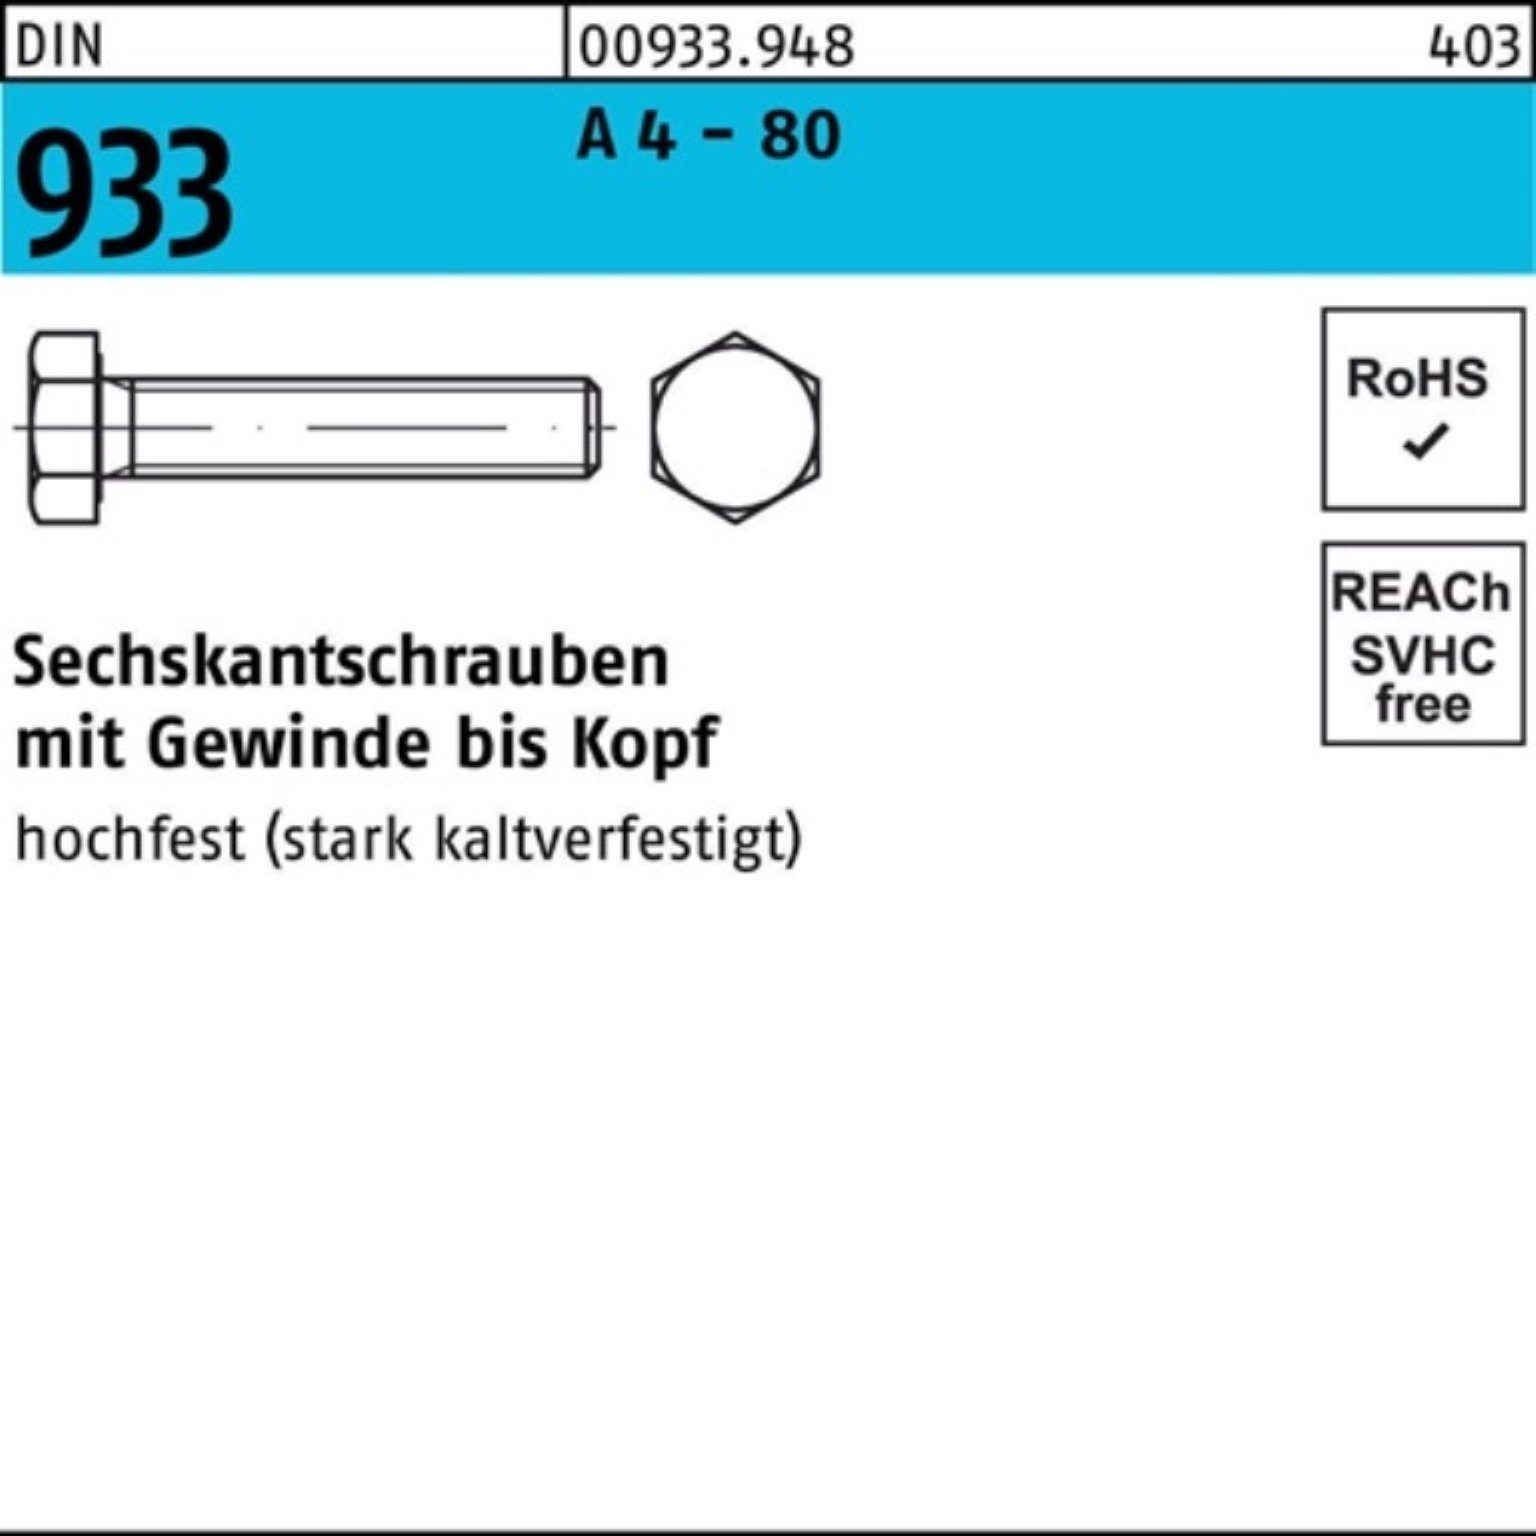 Reyher Sechskantschraube 100er Pack Sechskantschraube DIN 933 VG M6x 45 A 4 - 80 100 Stück DIN